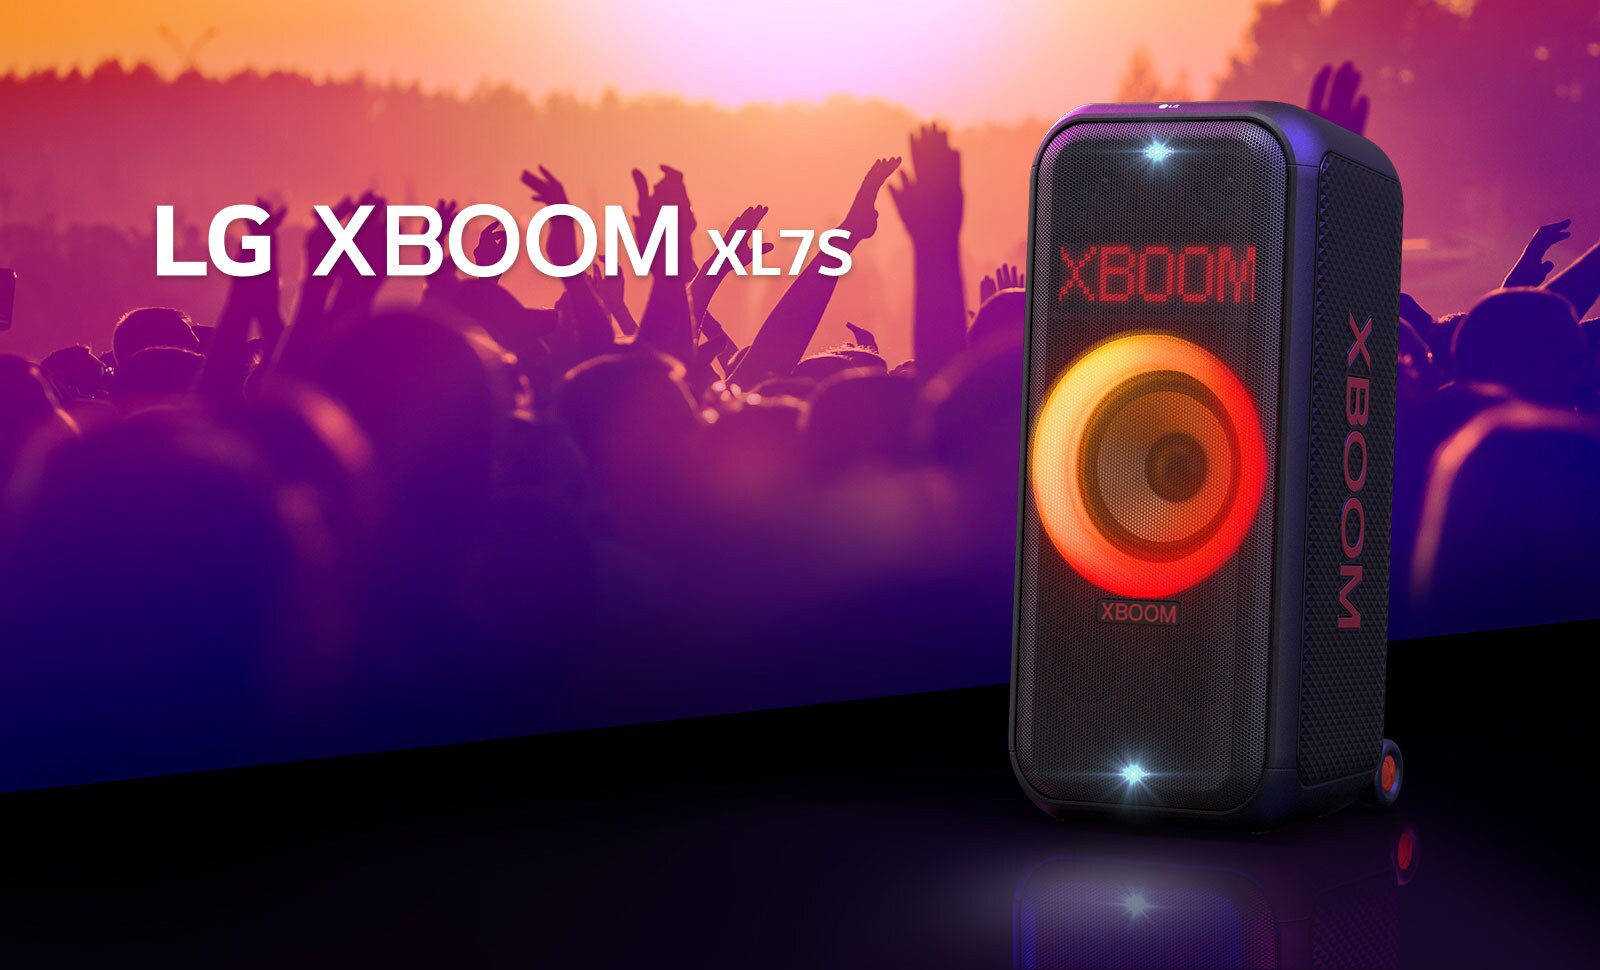 LG XBOOM XL7S se coloca en el escenario con una iluminación degradada de rojo a naranja encendida. Detrás del escenario, la gente disfruta de la música.